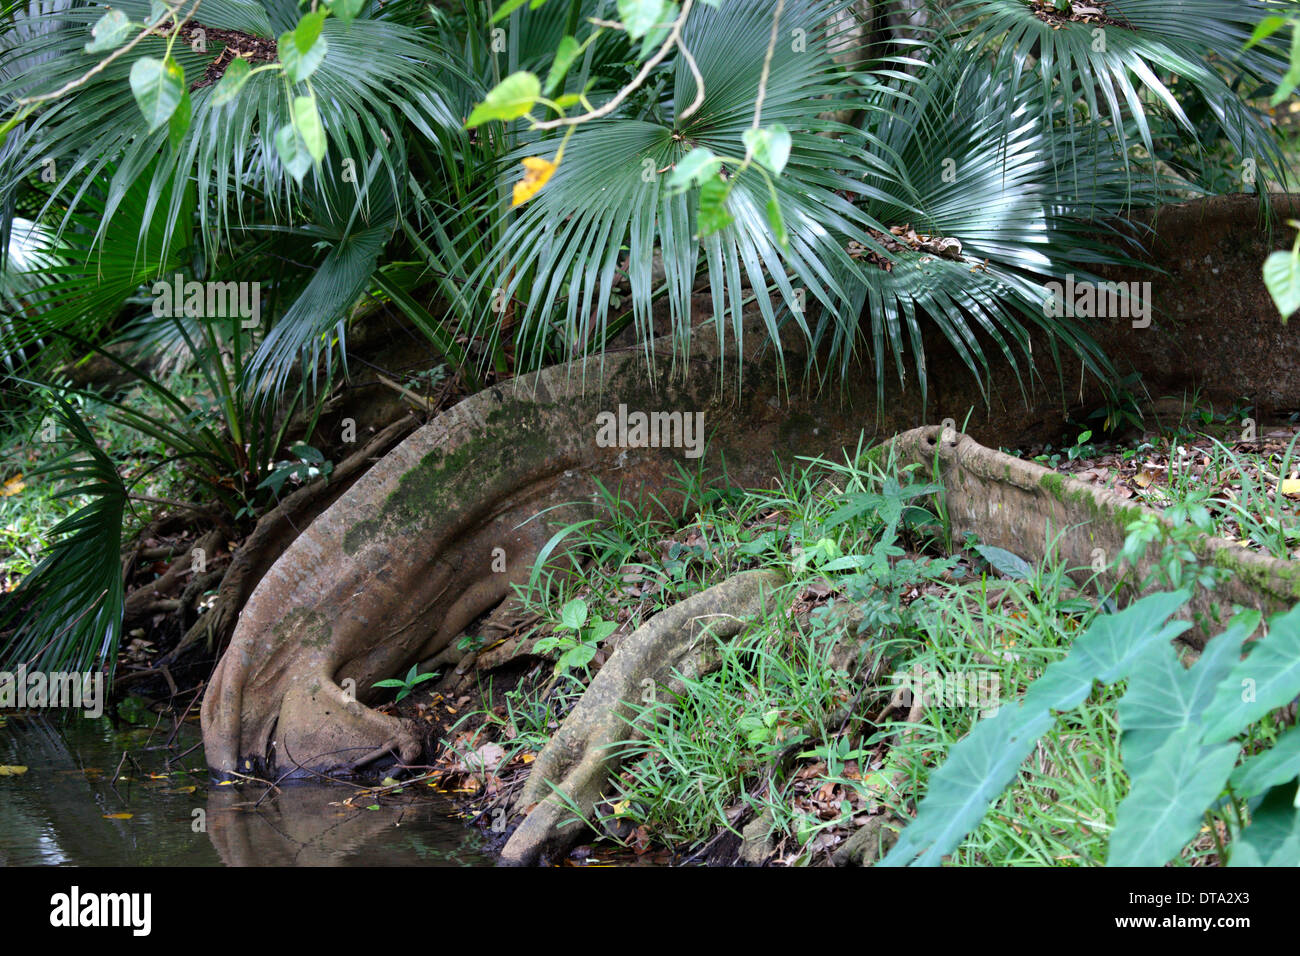 Stamm der Struktur in den Botanischen Garten von Pamplemousses Mauritius kultiviert ähnlich dem Elefanten Rüssel trinken Stockfoto